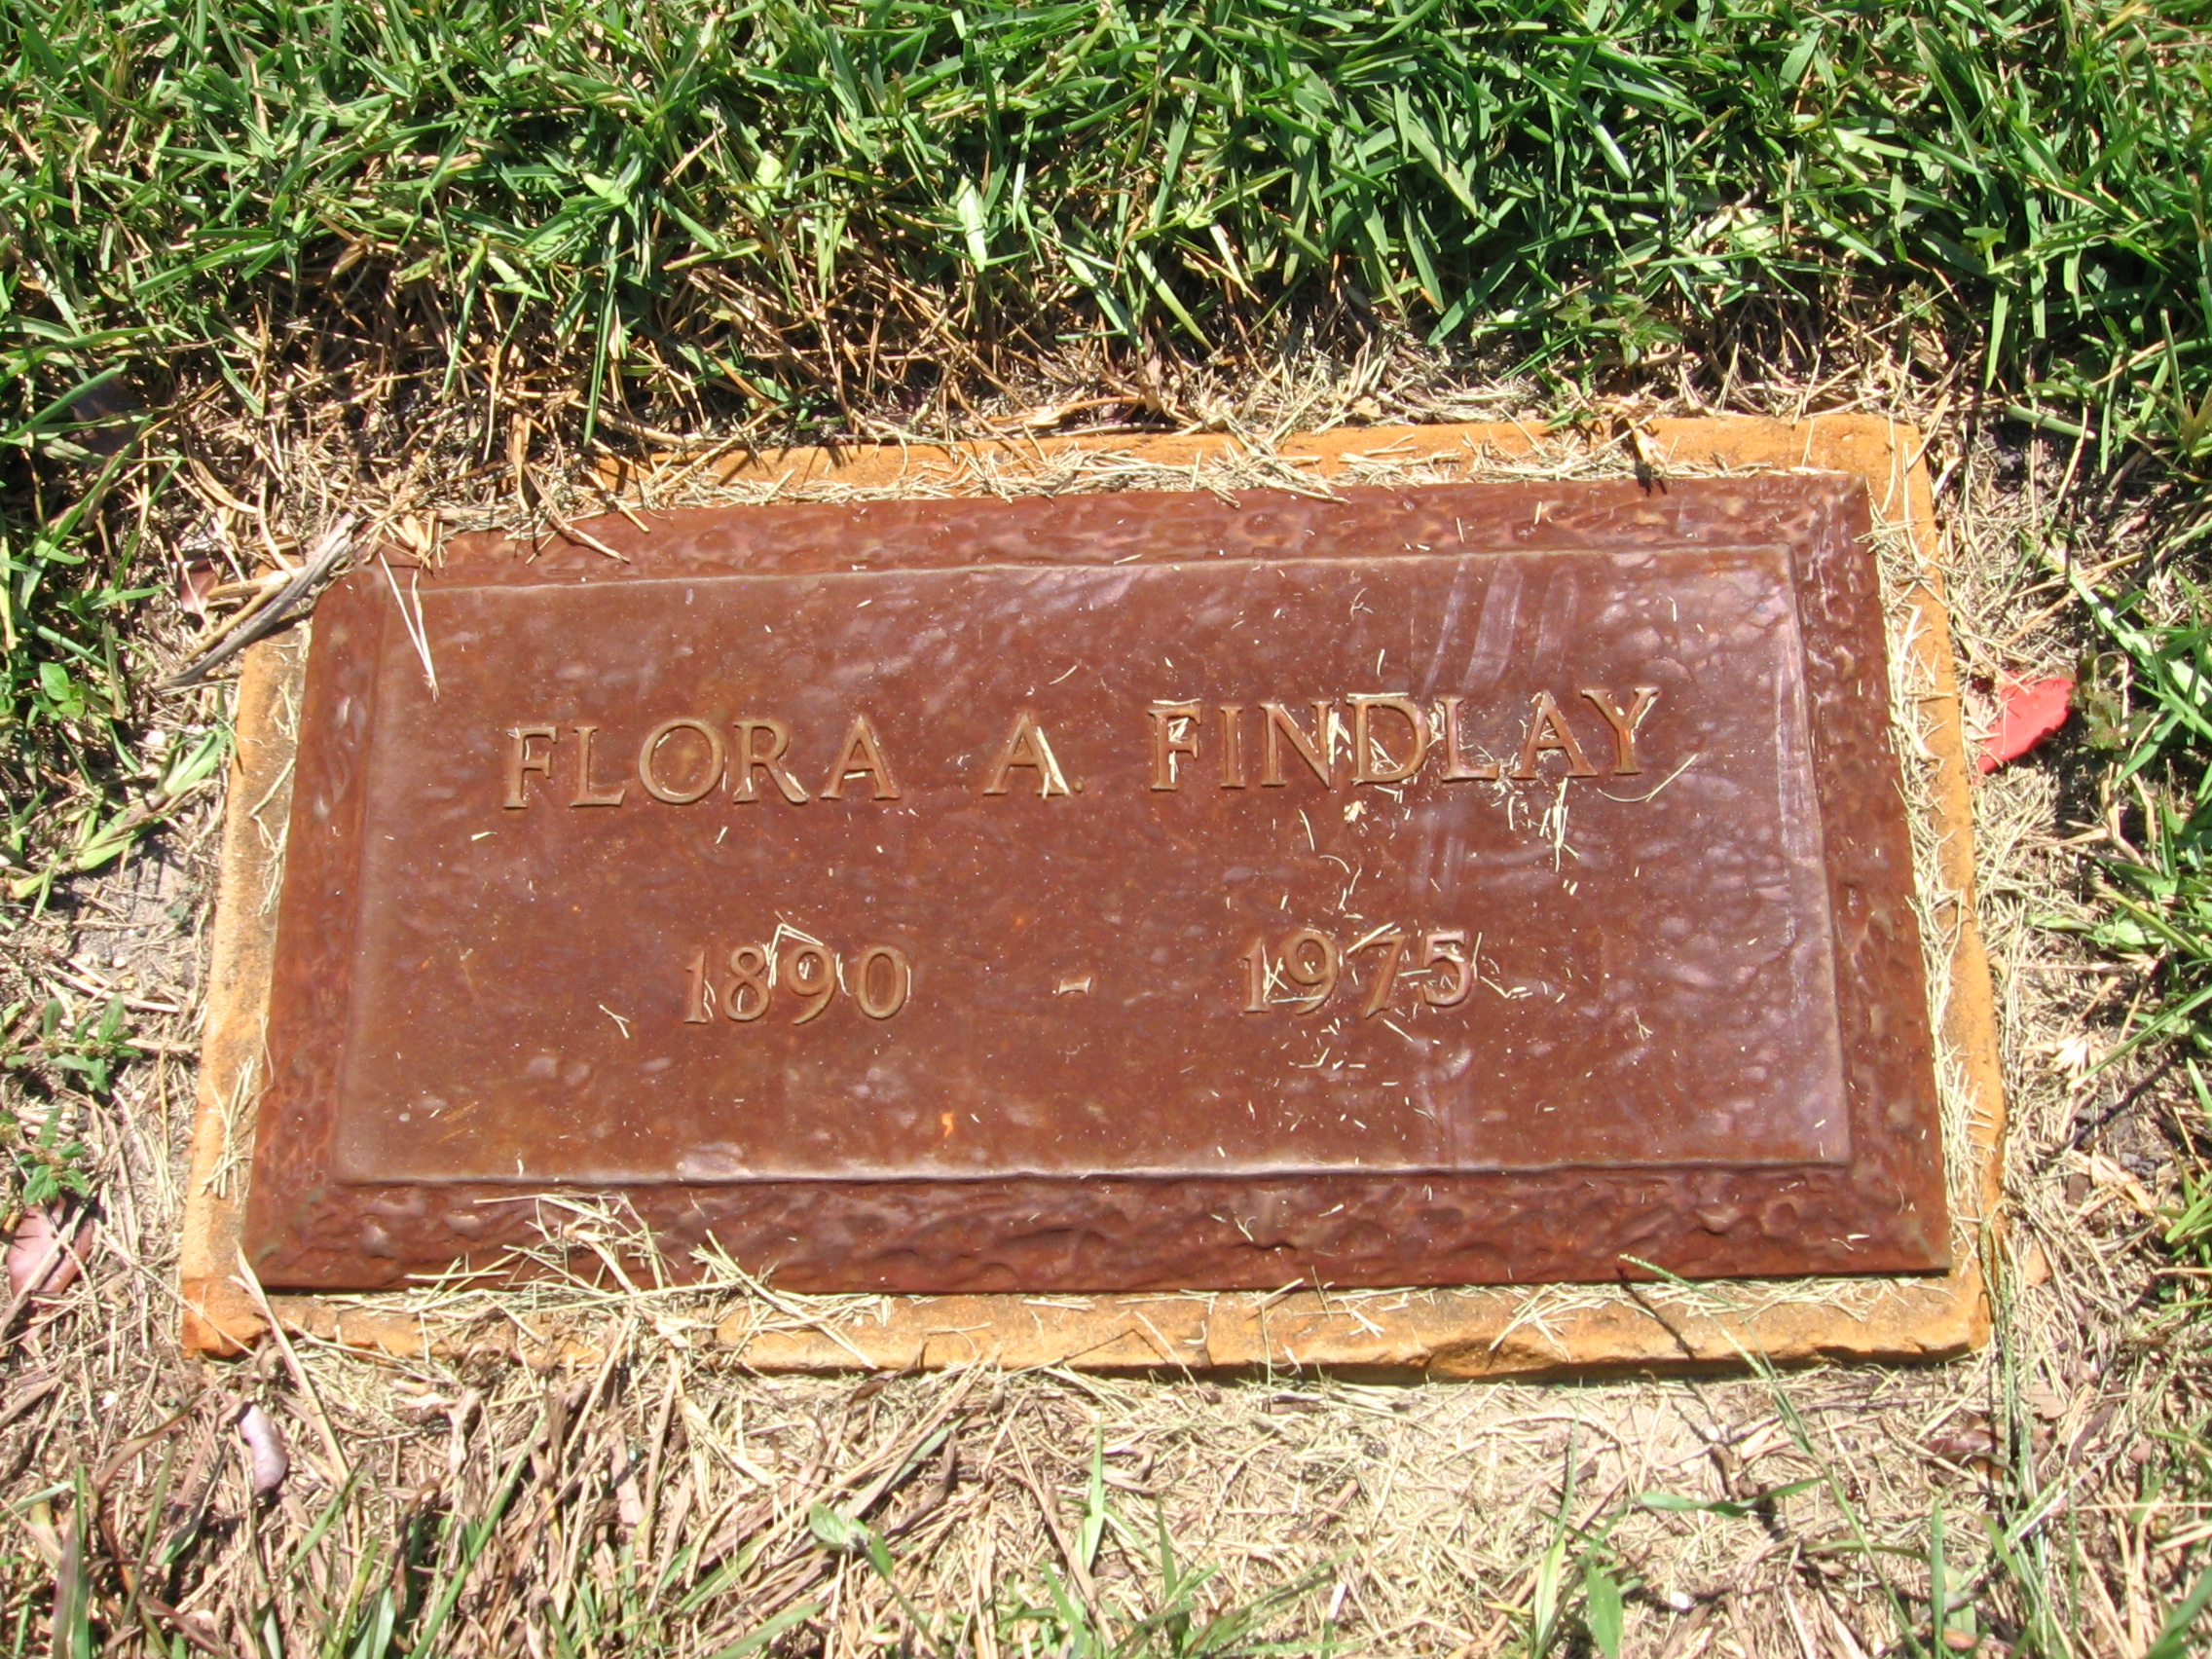 Flora A Findlay